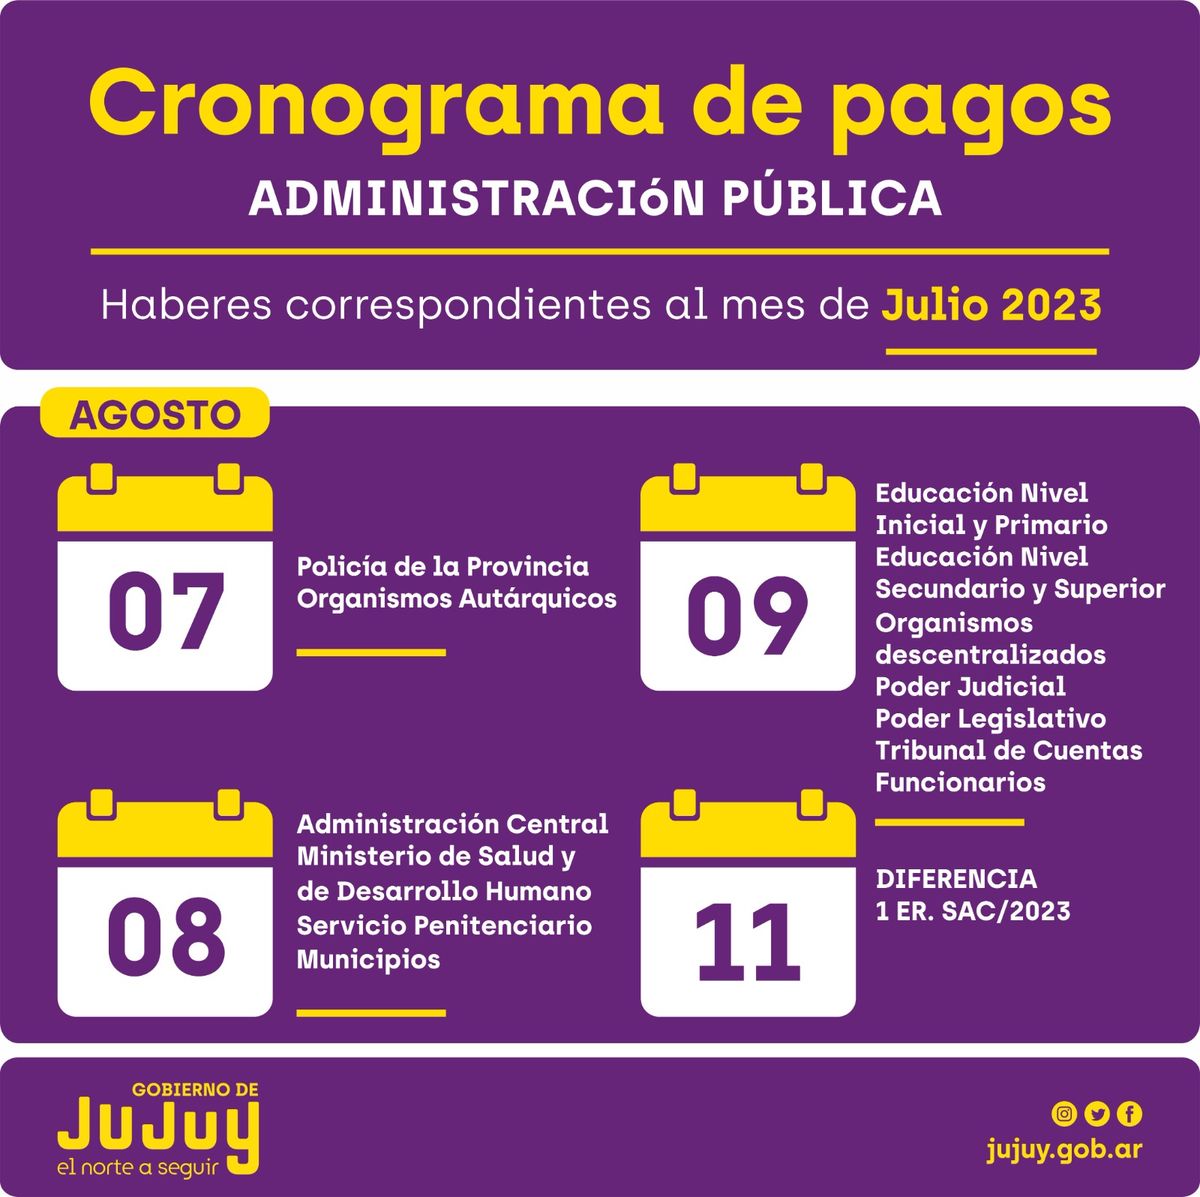 El lunes 7 de agosto inicia el cronograma de pagos para los agentes de las reparticiones públicas